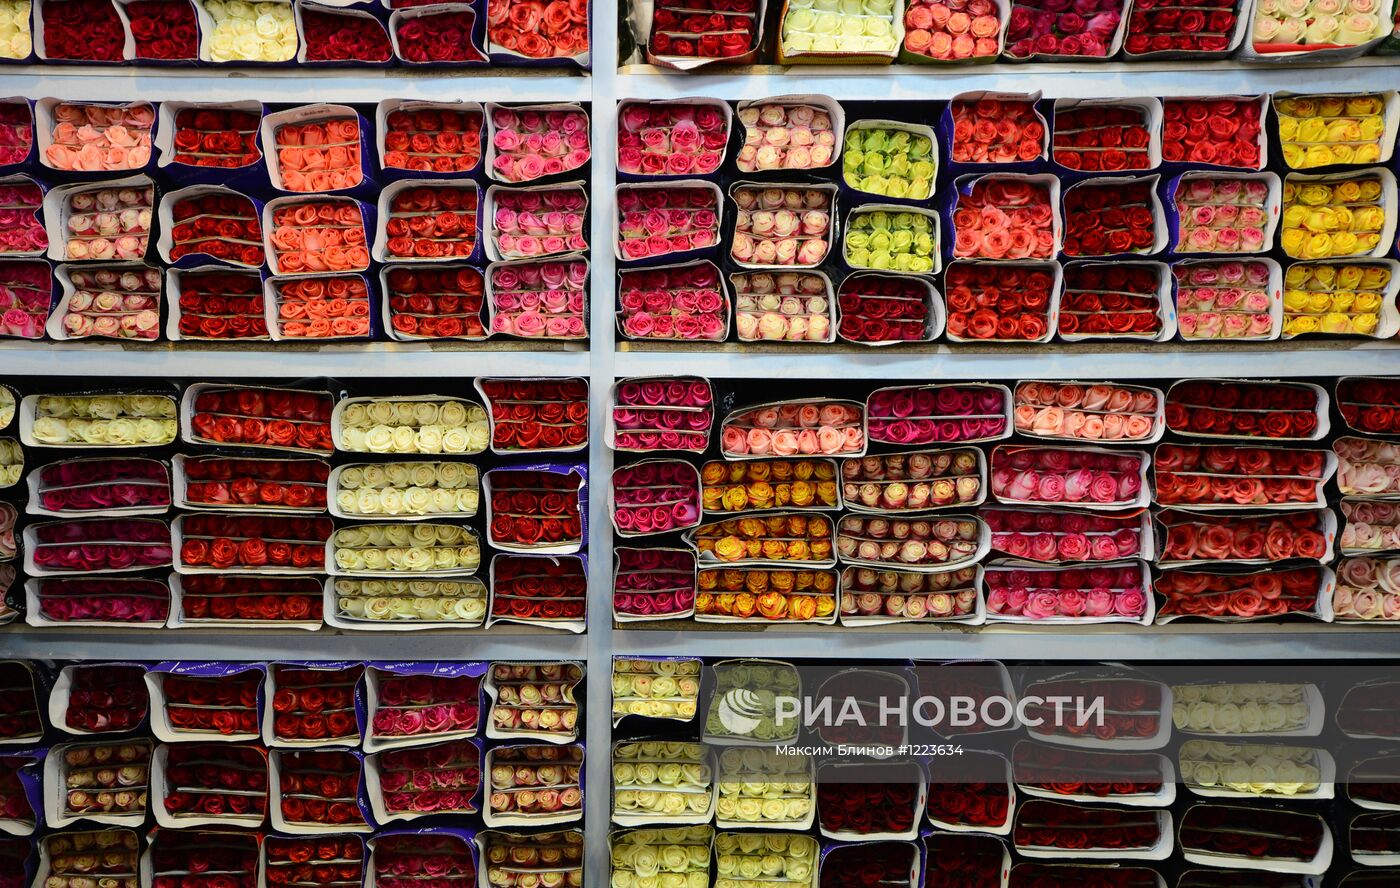 Продажа цветов перед началом учебного года в Москве